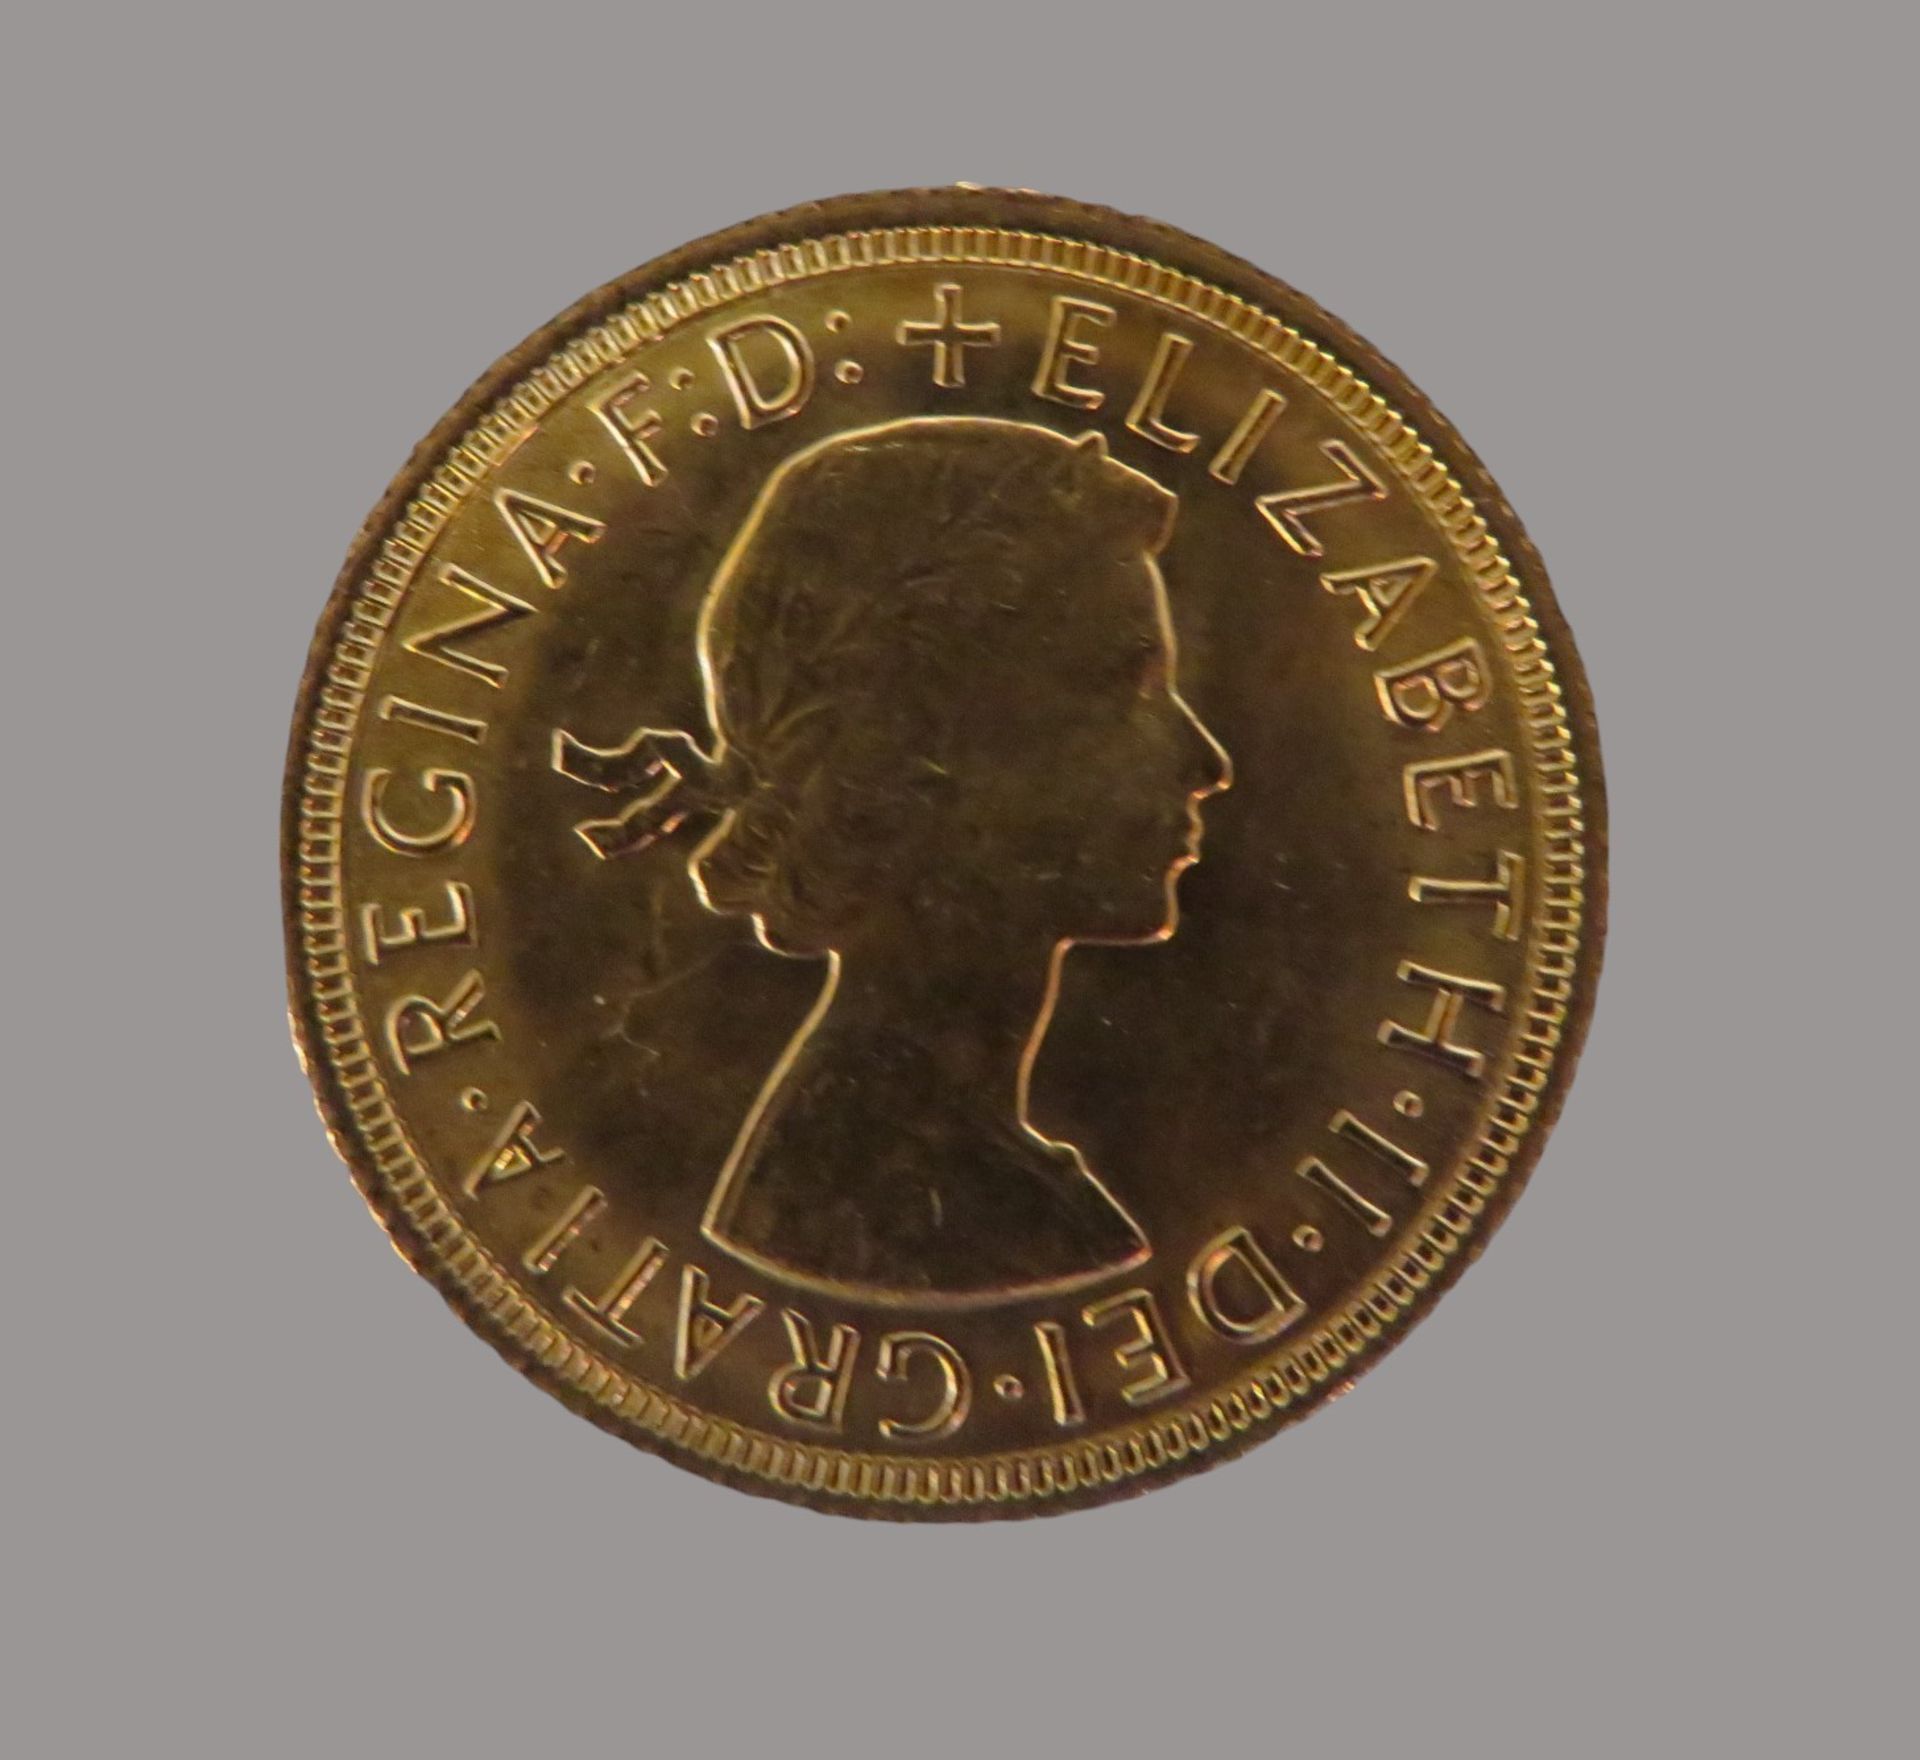 Goldmünze, 1 Pfund, Sovereign, 1967, Gold 916/000, 7,99 g, d 2,2 cm.